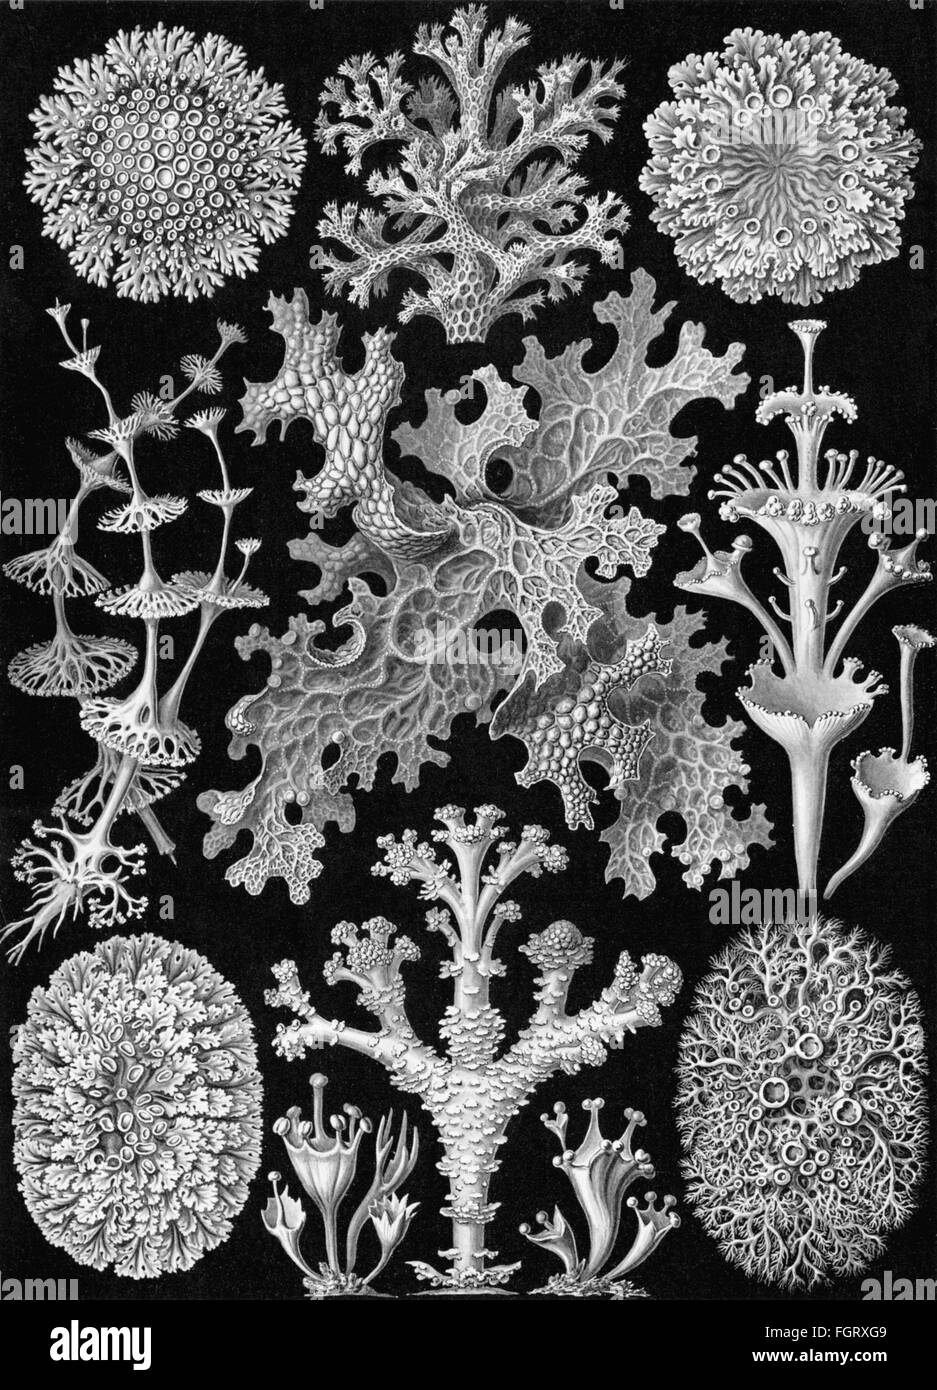 Wissenschaft, Biologie, Lichenes, Cladonia, Lithographie, 'Kunstformen der Natur' von Ernst Haeckel, 1899 - 1904, zusätzliche-Rechte-Clearenzen-nicht vorhanden Stockfoto